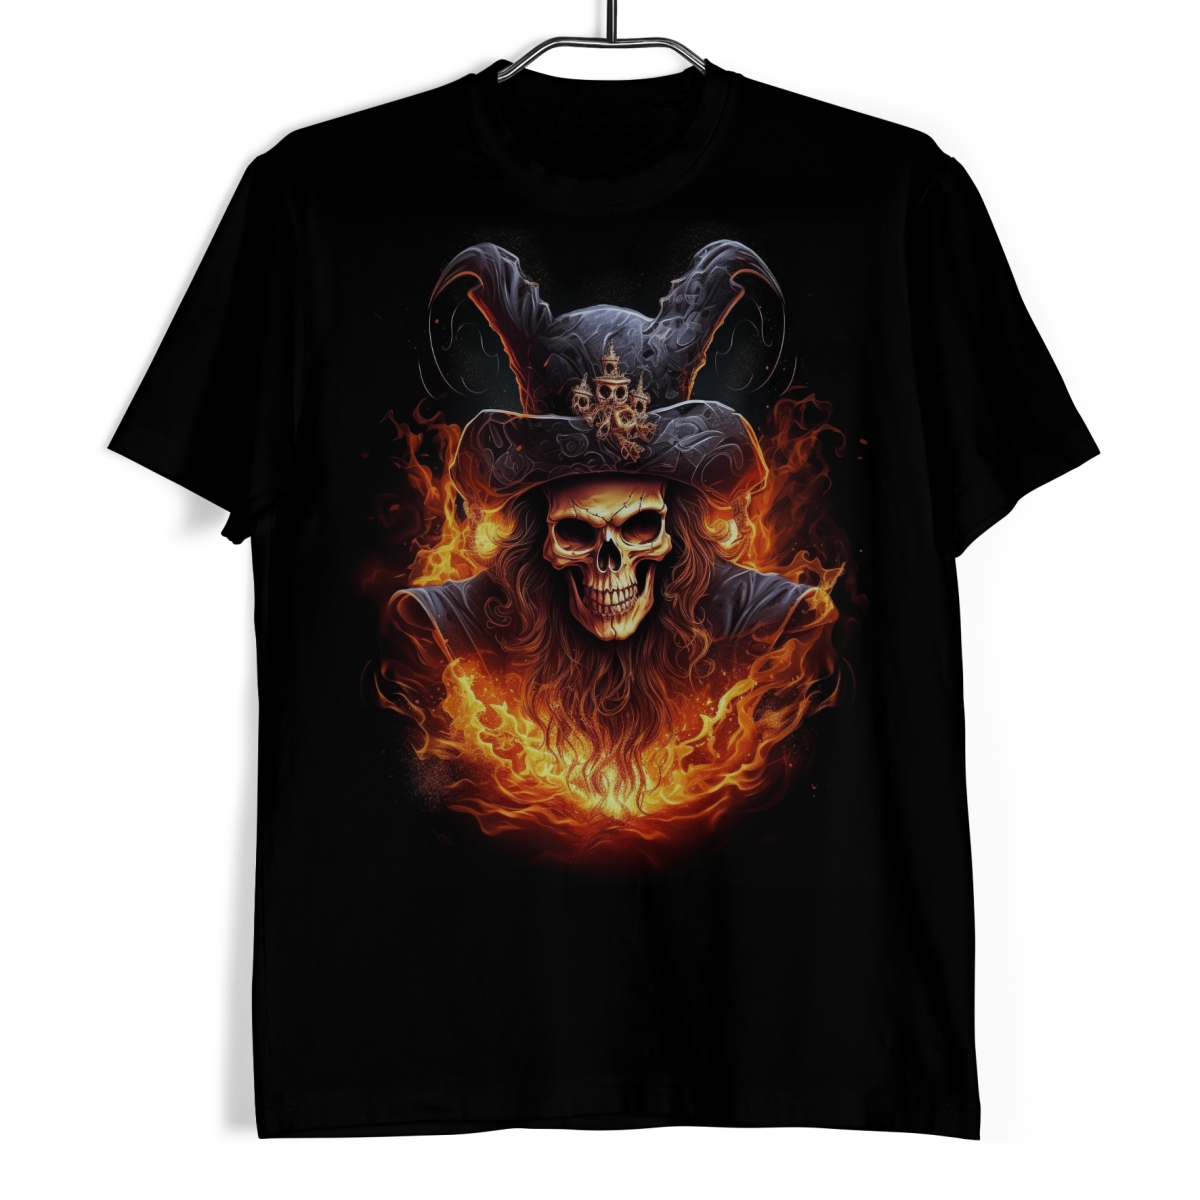 Tričko s lebkou - Pirát v plamenech 3XL